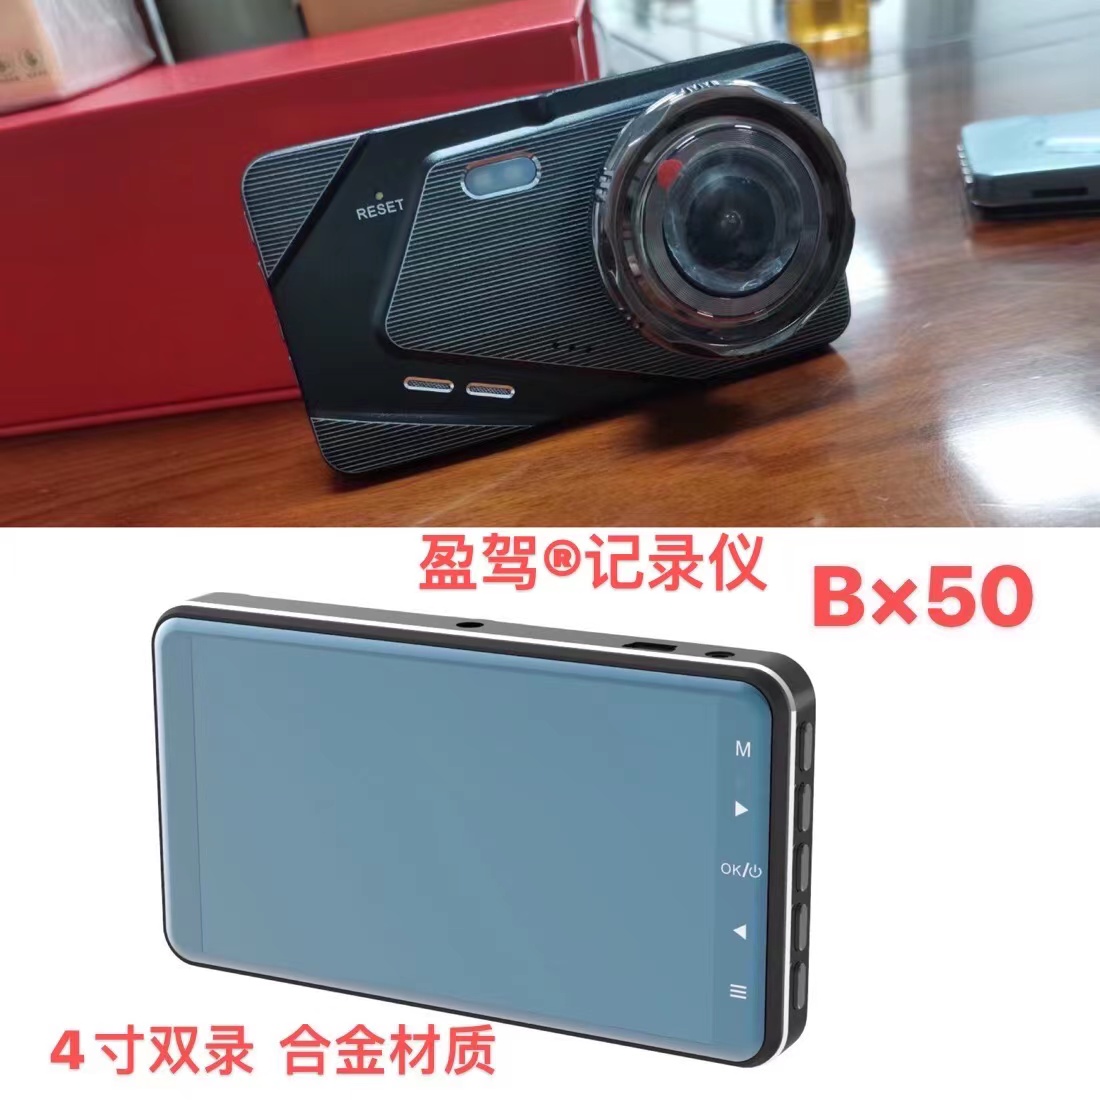 Mota kamera --YJ mhando -- chigadzirwa chitsva -- BX50 inounzwa